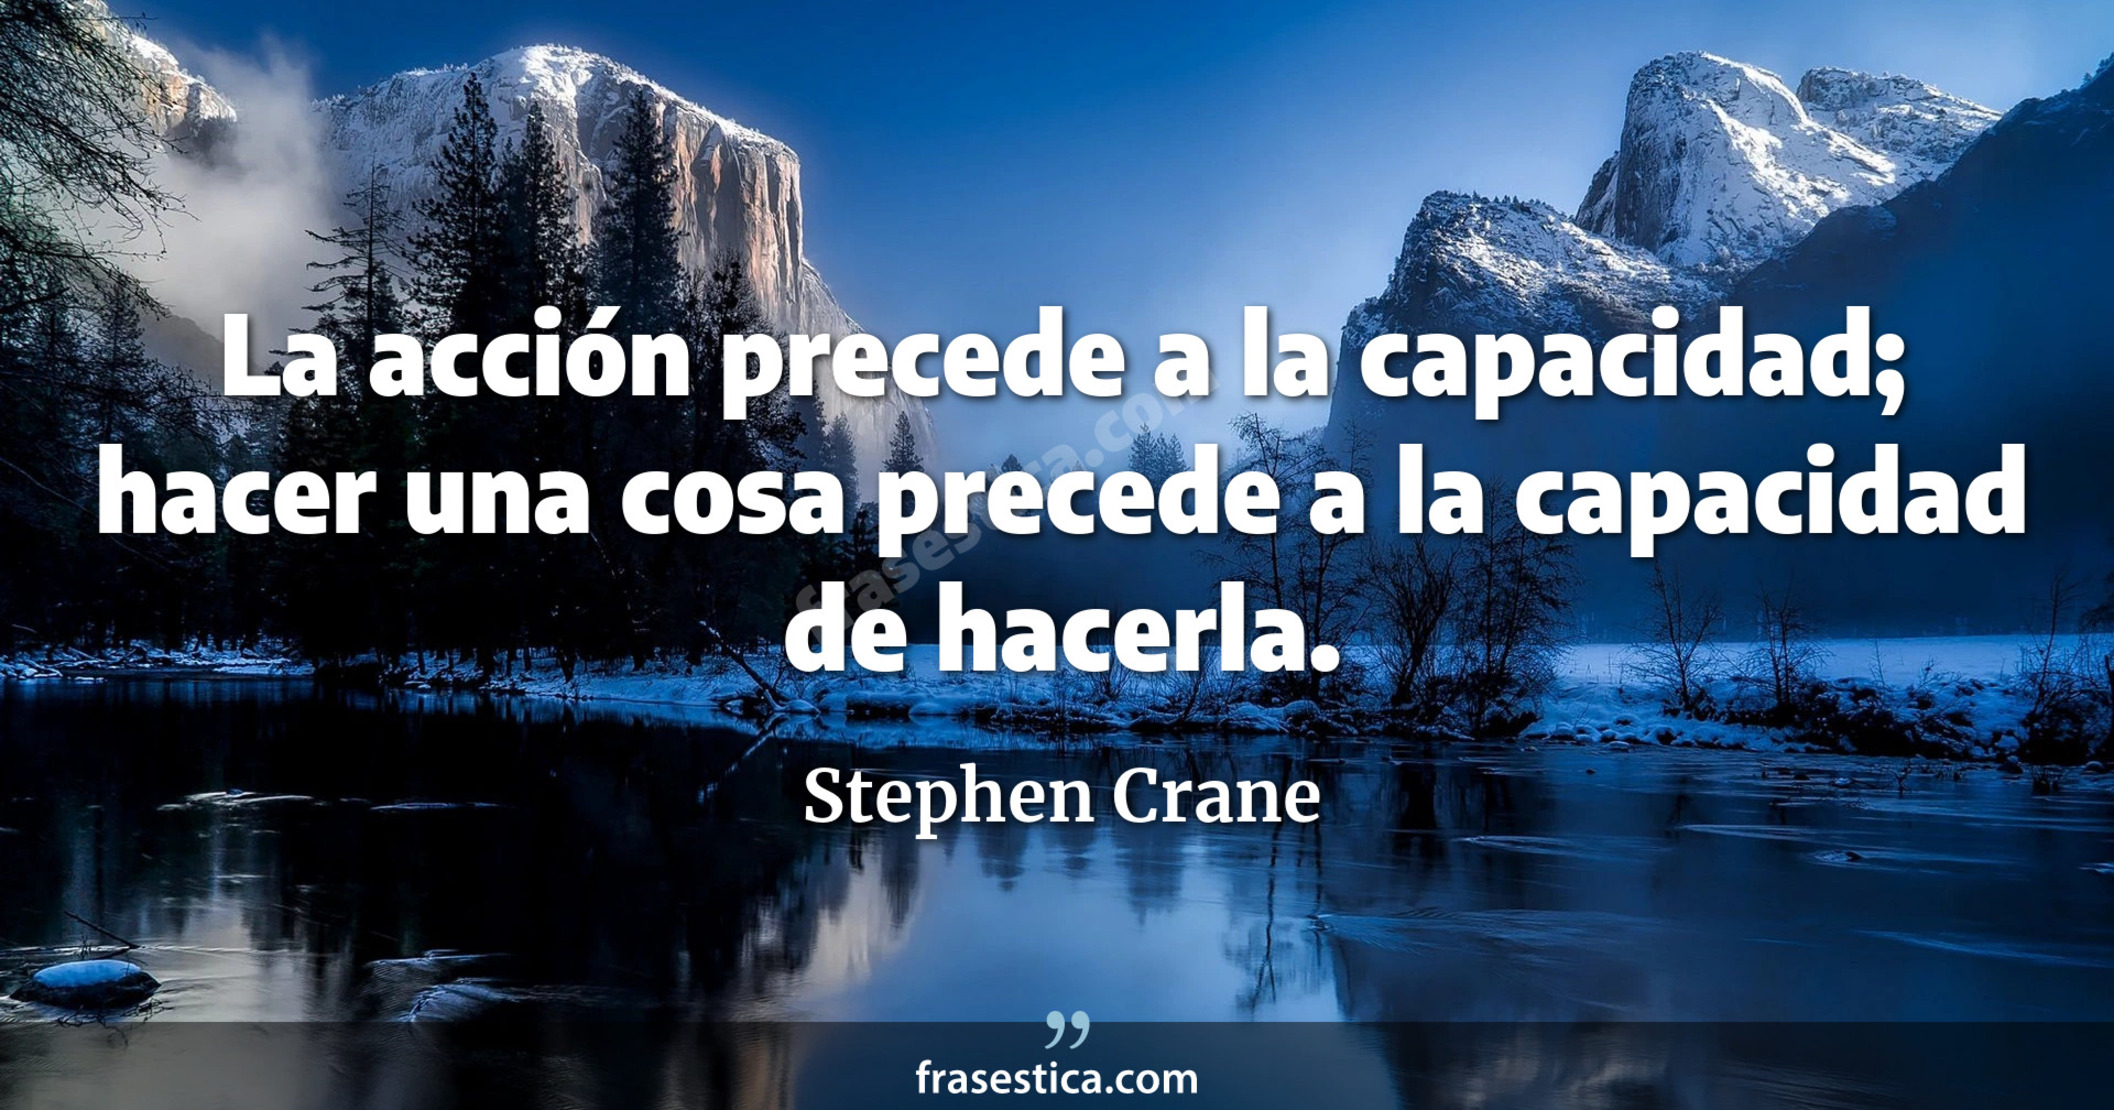 La acción precede a la capacidad; hacer una cosa precede a la capacidad de hacerla. - Stephen Crane